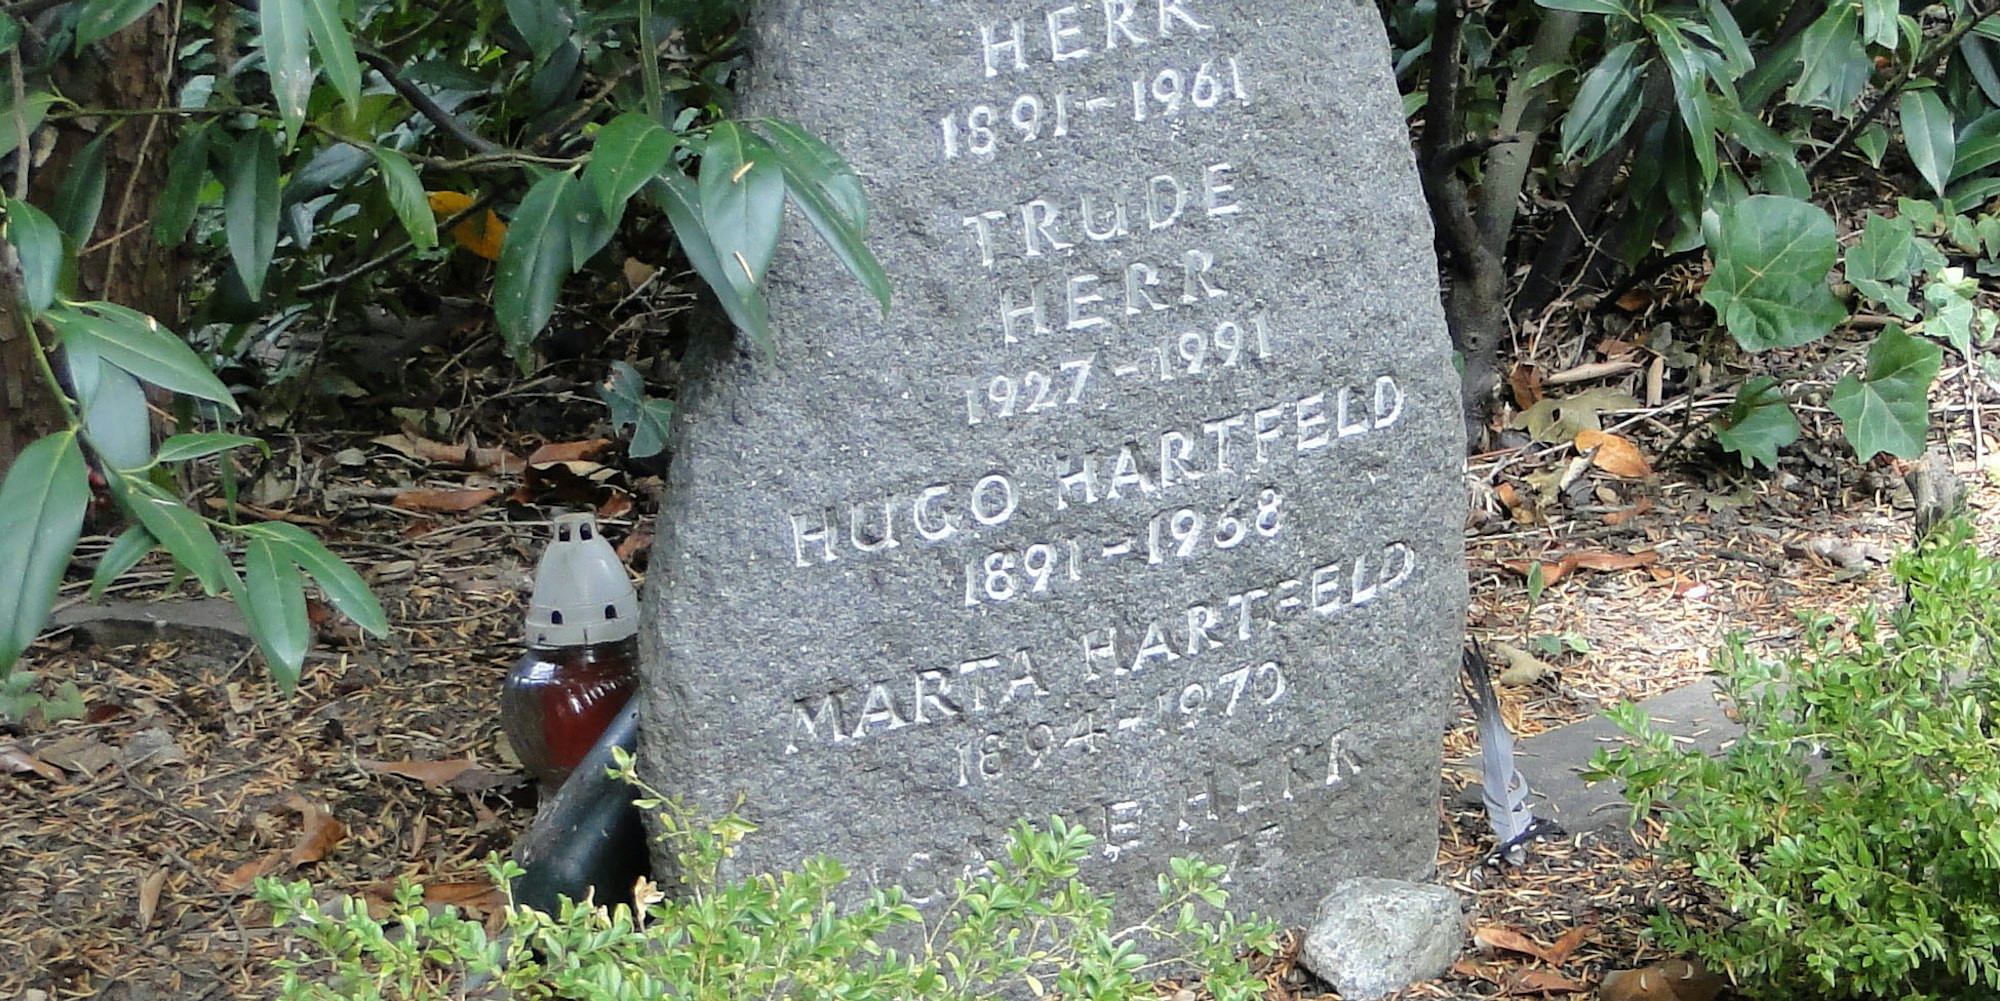 Trude Herrs Grabstein (l.); Günter Leitner (Mitte) konnte seinen Zuhörern viel Wissenswertes über den Friedhof vermitteln.